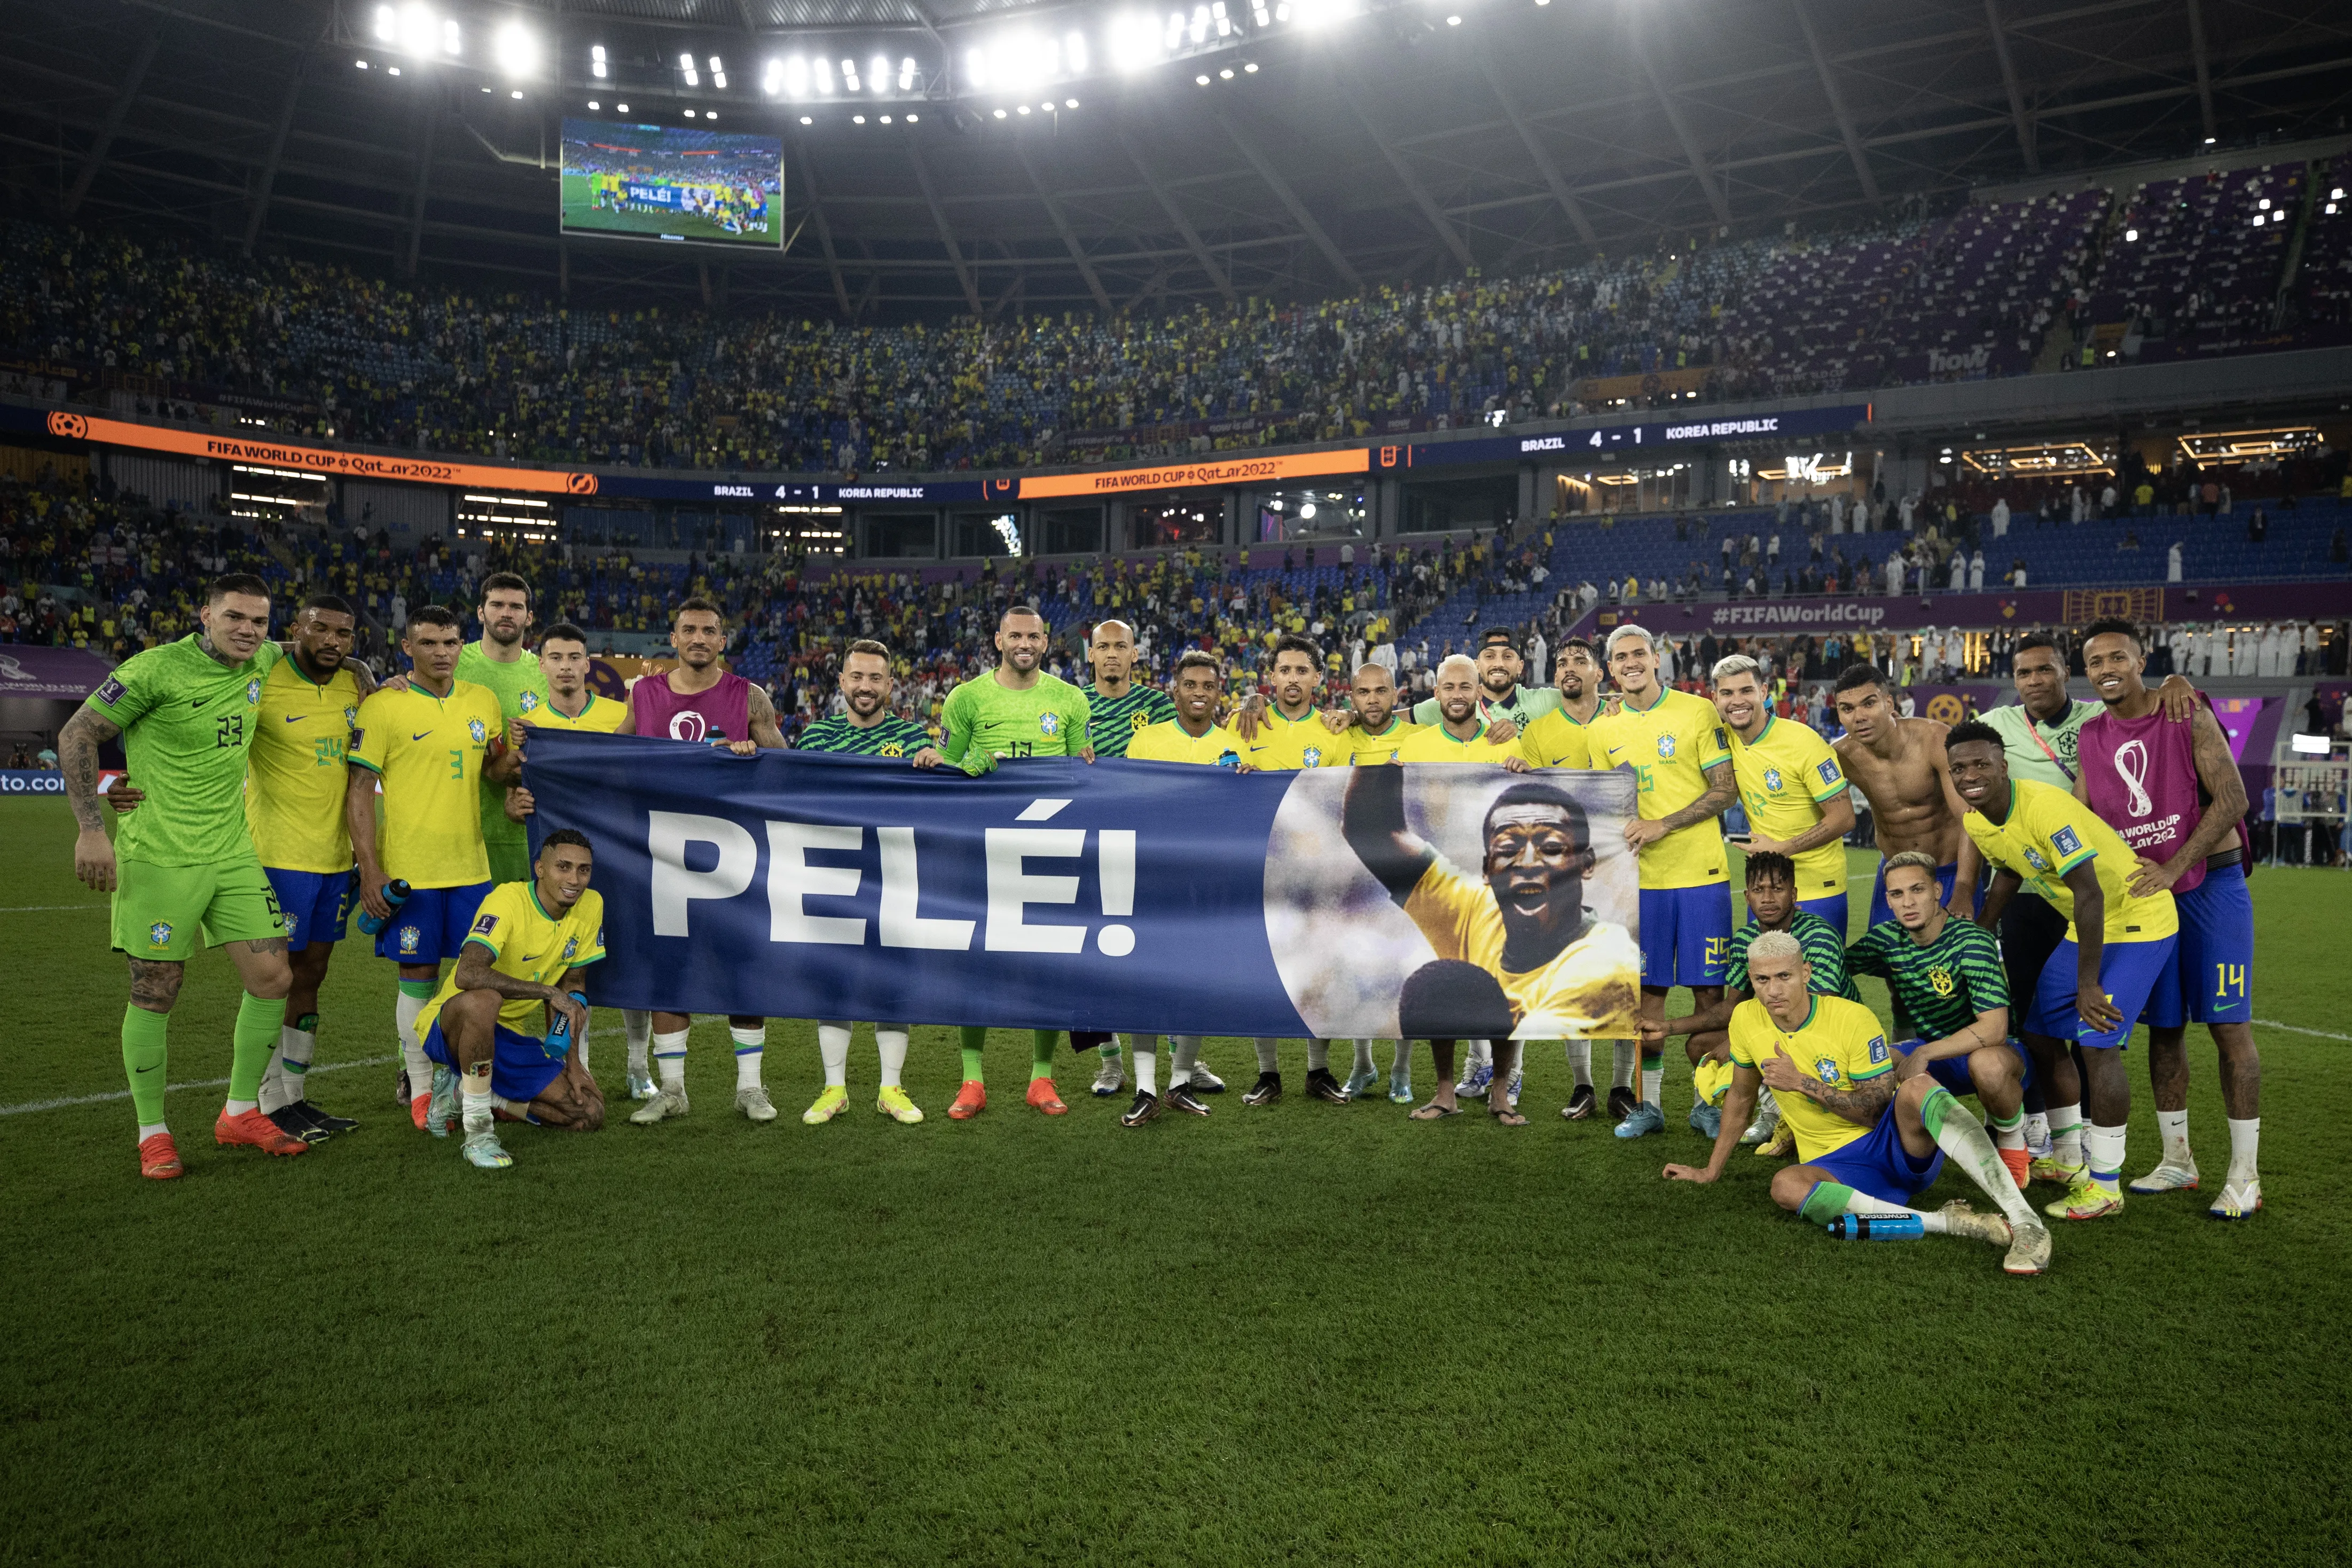 Jogadores brasileiros estenderam faixa em homenagem ao Pelé após a goleada sobre a Coreia do Sul na Copa do Mundo